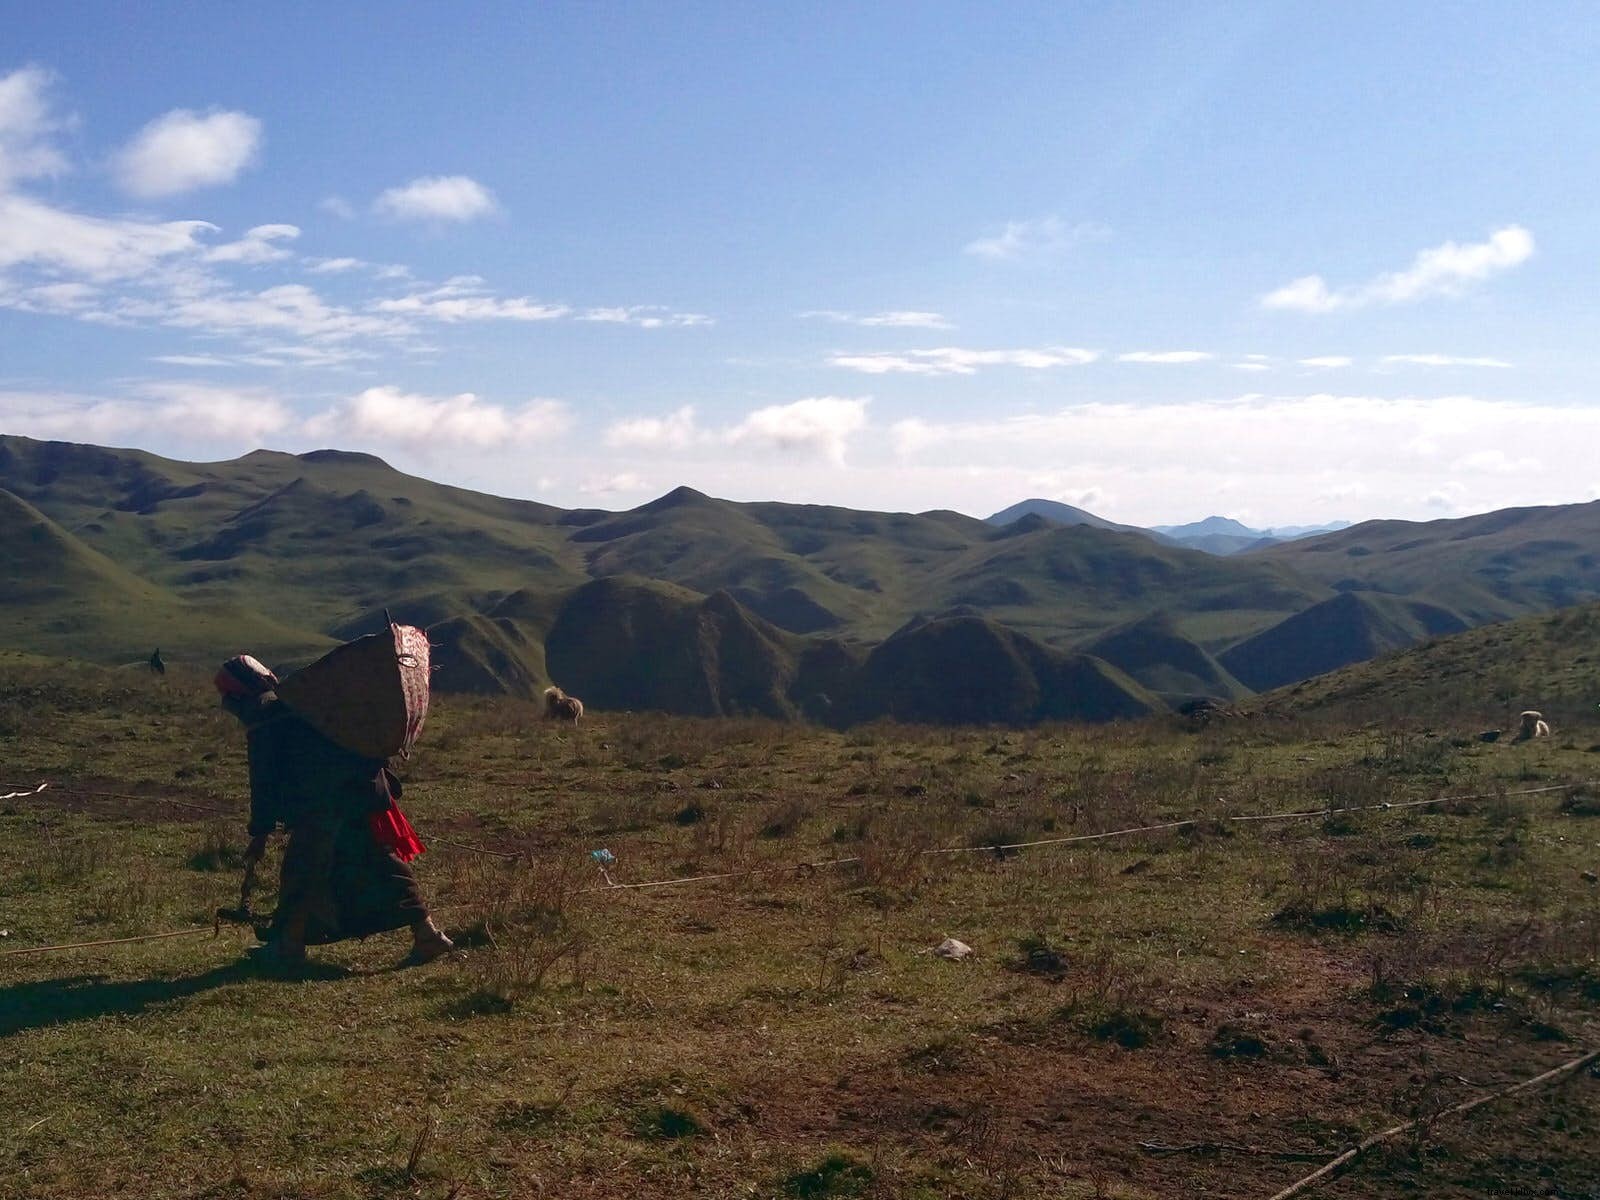 Dormir bajo el pelo de yak:la vida con los nómadas tibetanos de Gansu 